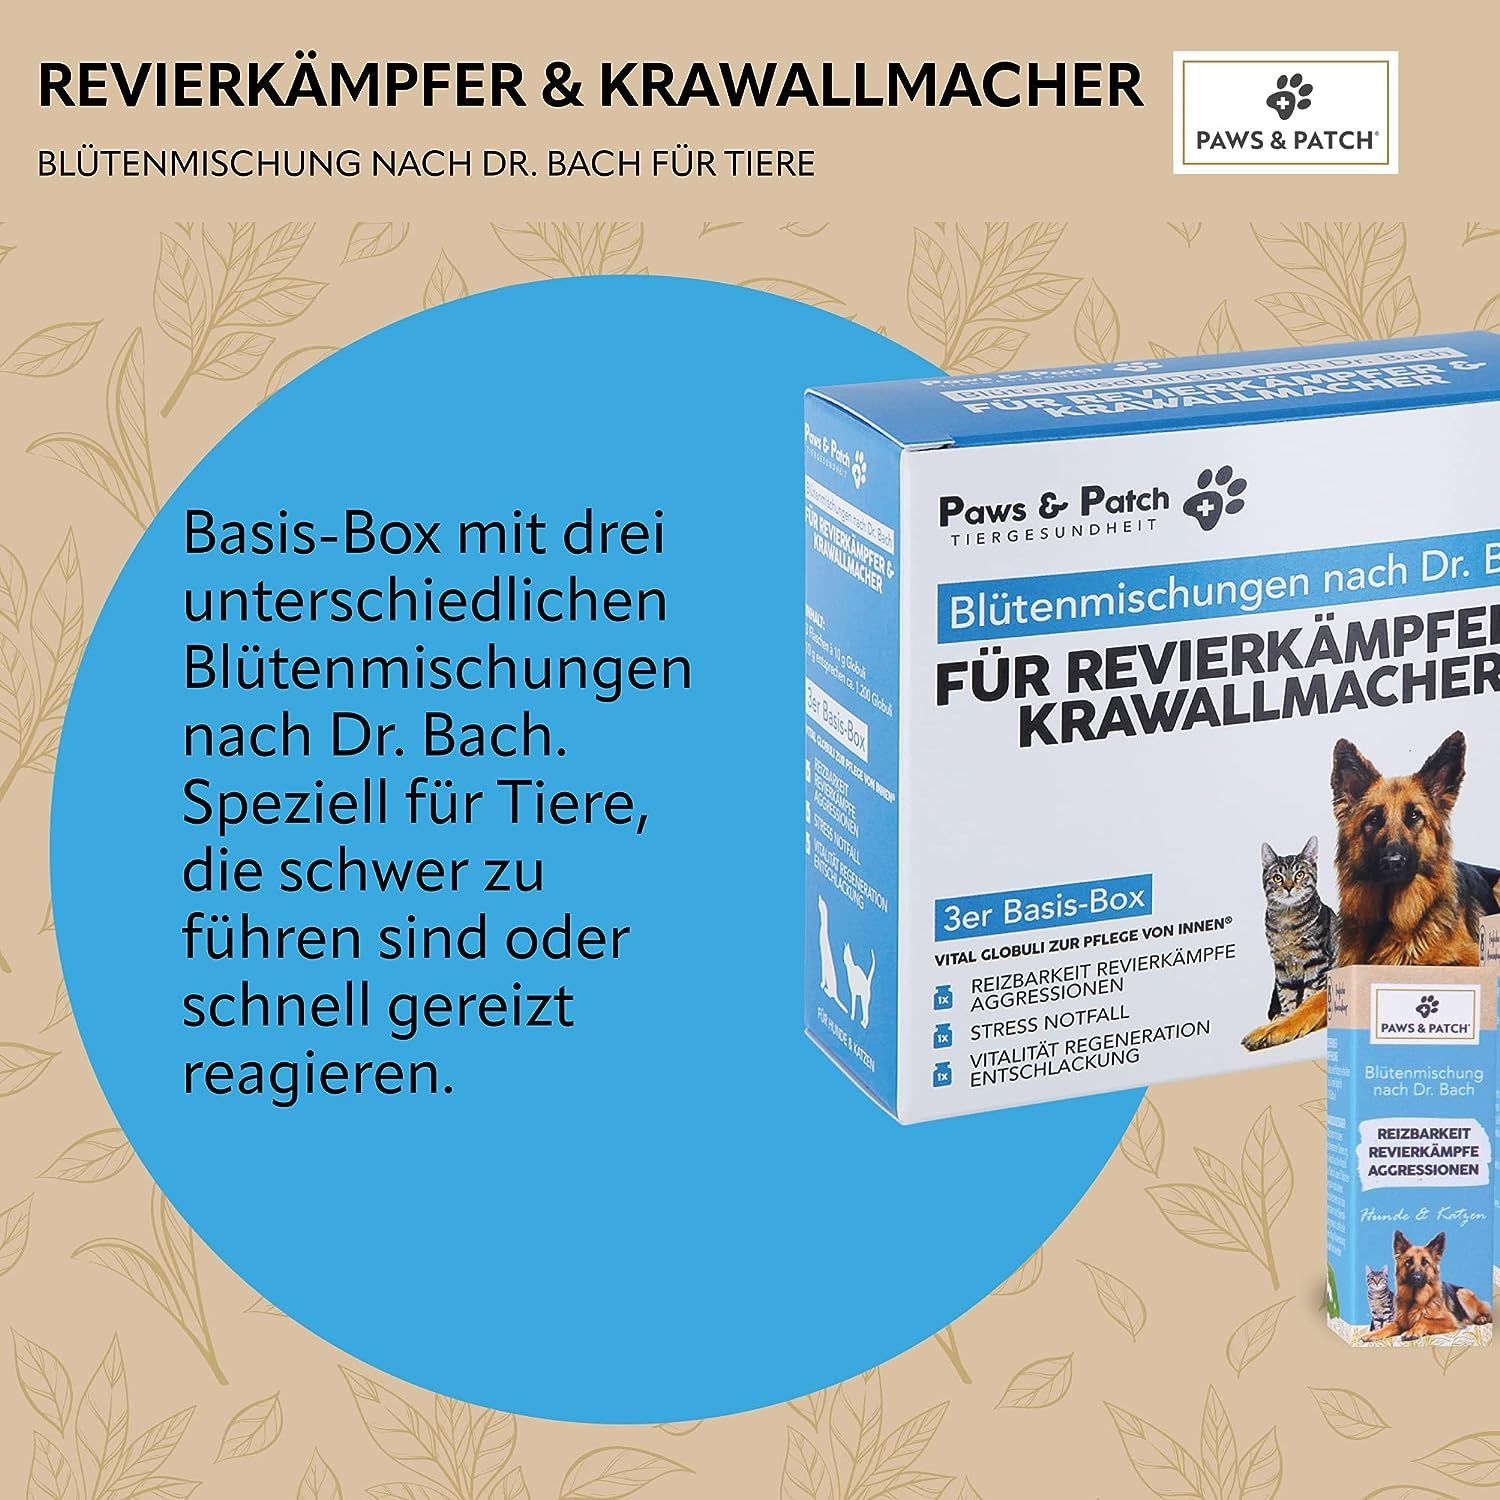 PAWS&PATCH Blütenmischung nach Dr. Bach 3er Basis-Box für REVIERKÄMPFER & KRAWALLMACHER